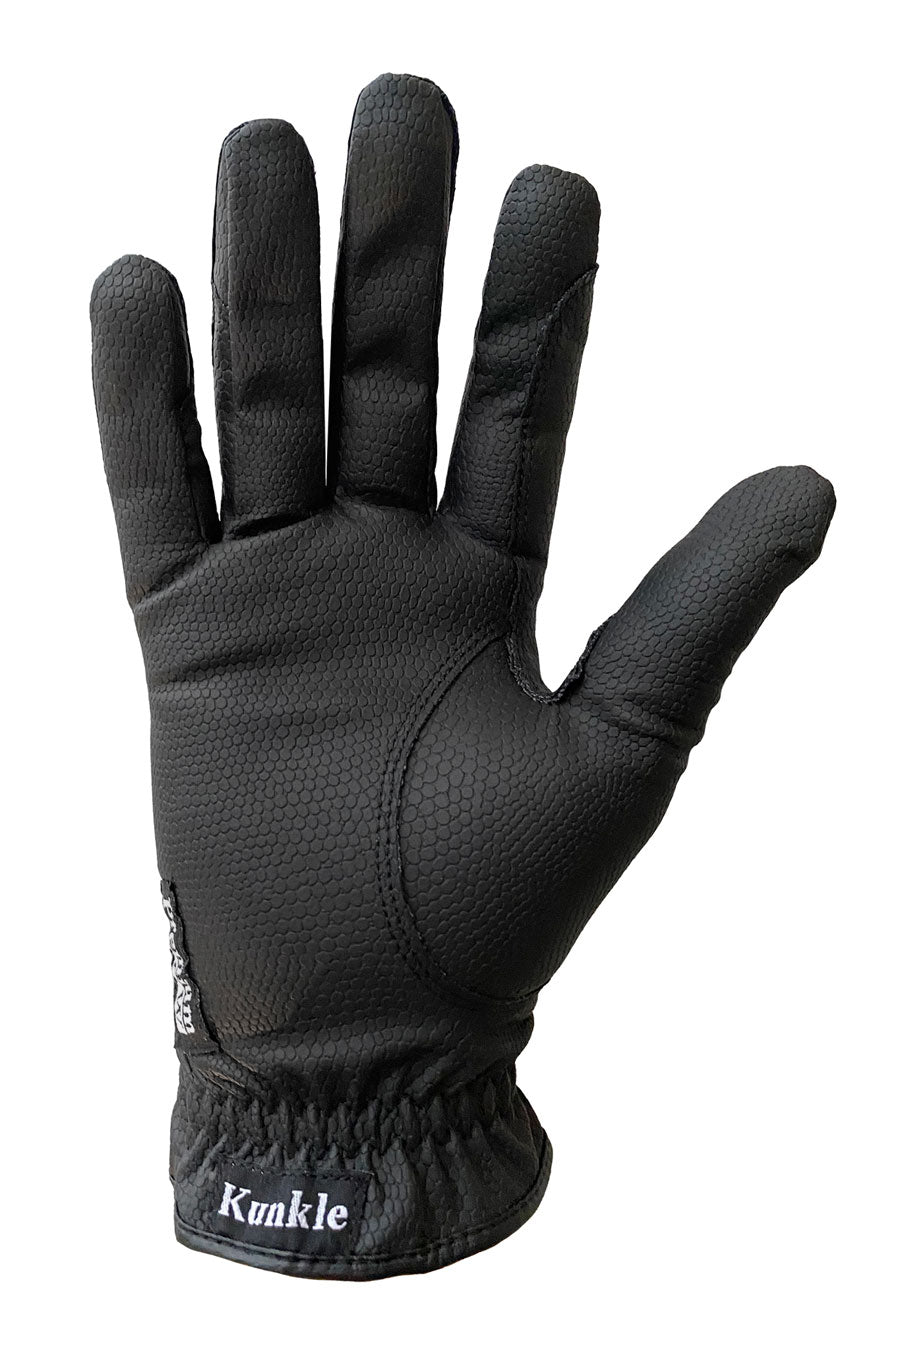 Kunkle Premium Winter Gloves